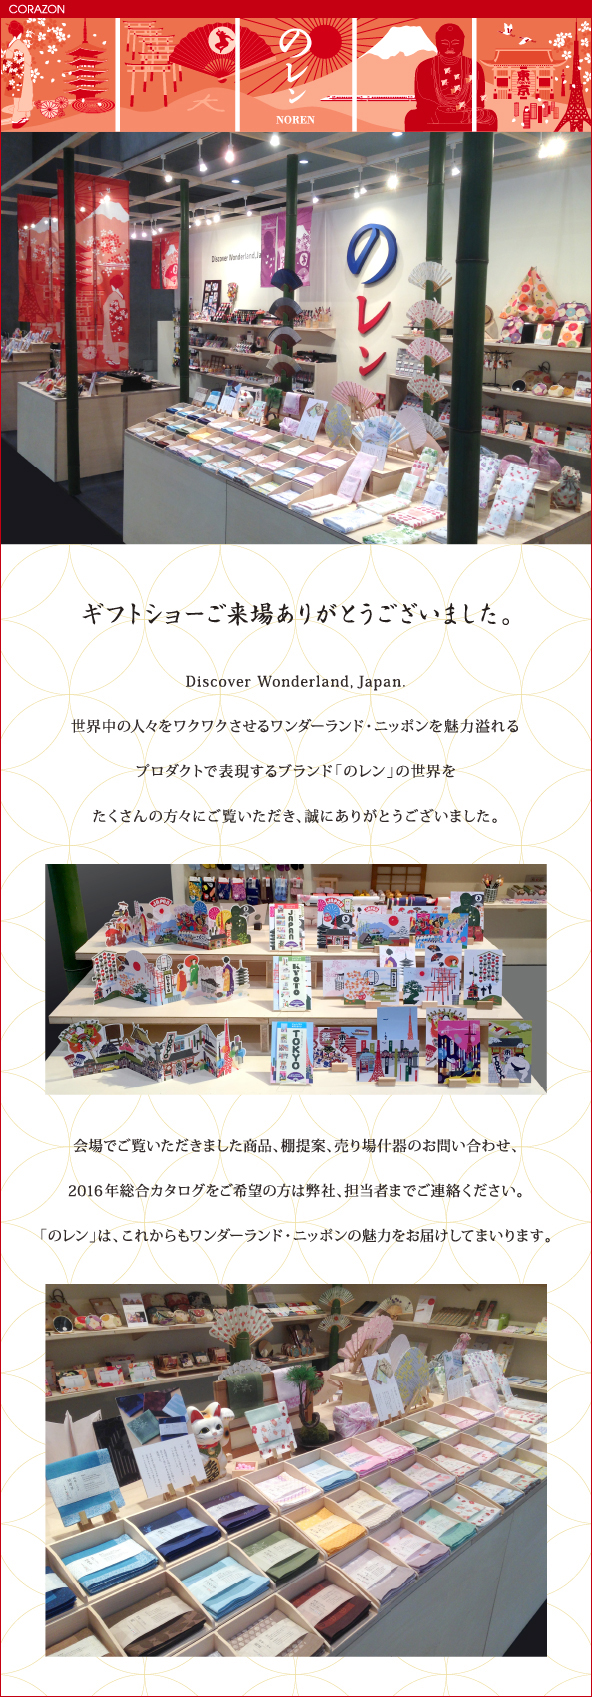 CORAZONメルマガ　20160209<br>

ギフトショーご来場ありがとうございました。<br>
Discover Wonderland, Japan<br>
世界中の人々をワクワクさせるワンダーランド・ニッポンを魅力溢れる<br>
プロダクトで表現するブランド「のレン」の世界を<br>
たくさんの方々にご覧いただき、誠にありがとうございました。<br>
会場でご覧いただきました商品、棚提案、売り場什器のお問い合わせ、<br>
2016年総合カタログをご希望の方は弊社、担当者までご連絡ください。<br>
「のレン」は、これからもワンダーランド・ニッポンの魅力をお届けしてまいります。<br>

<br>
<br>
